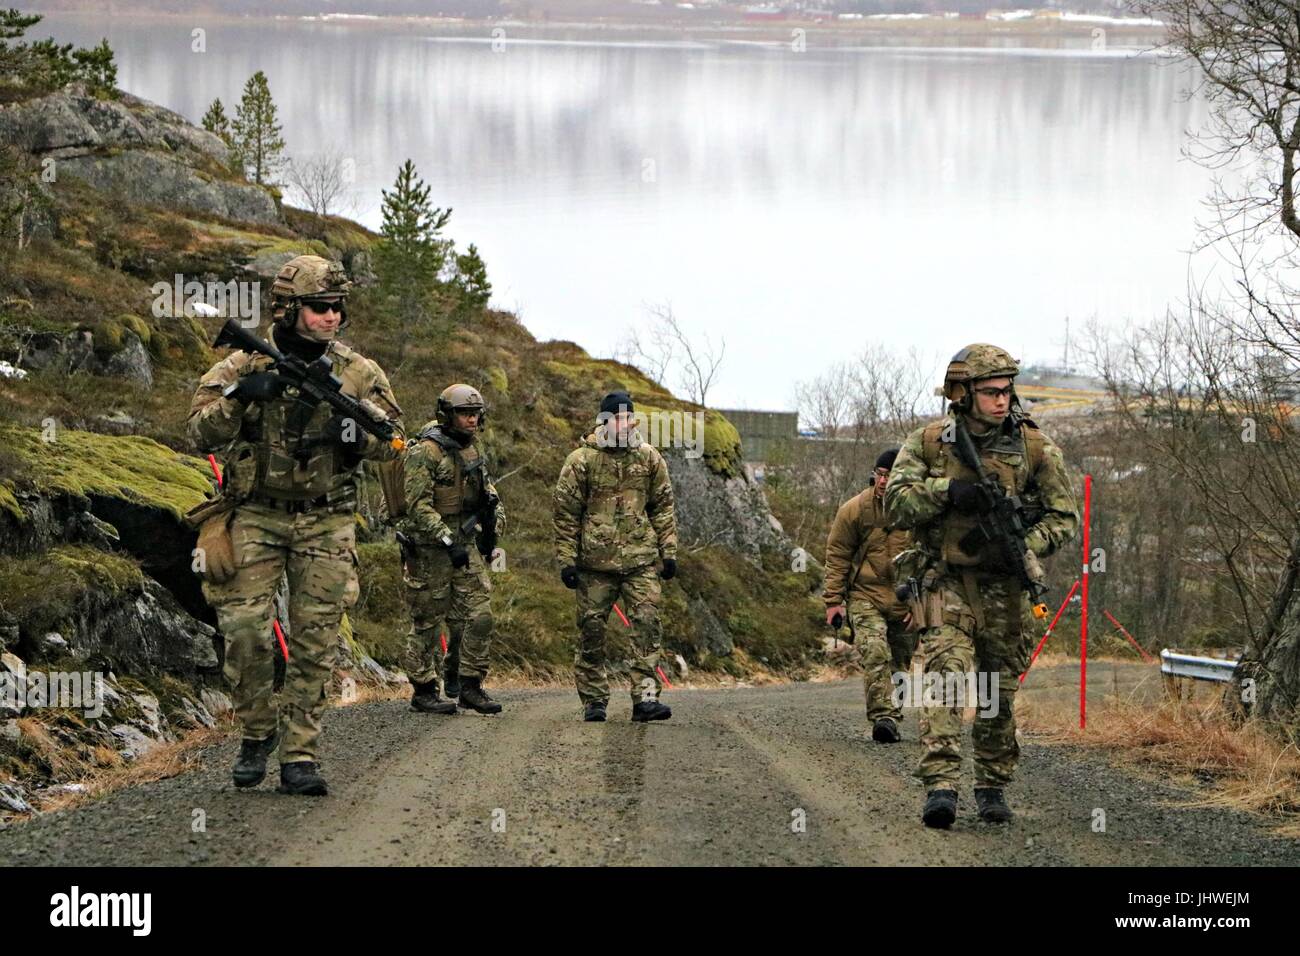 Operación especial de EE.UU. commandos conducta desmontados contra-dispositivo explosivo improvisado operaciones durante el ejercicio especialista Ártico Febrero 14, 2017 en Ramsund, Noruega. (Foto por Seth Wartak via Planetpix) Foto de stock